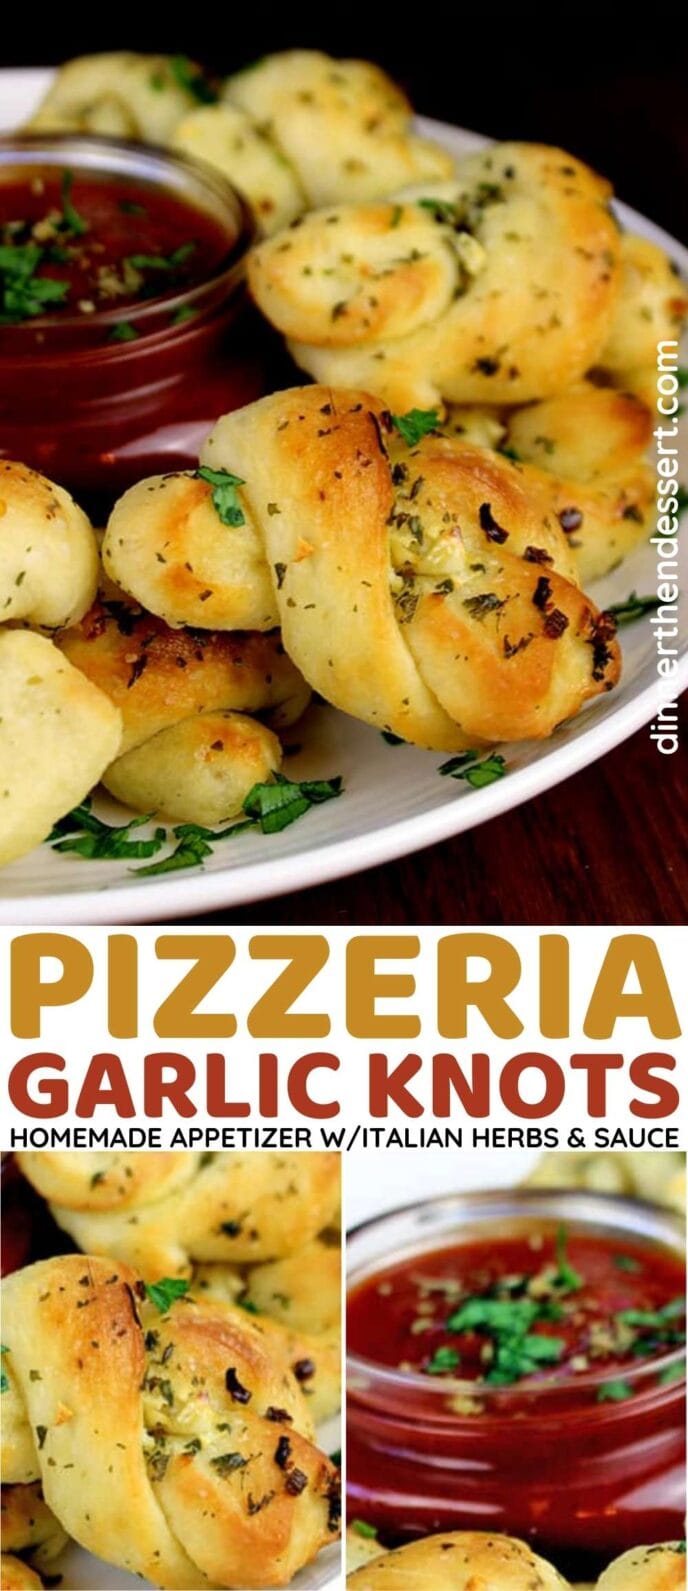 Pizzeria Garlic Knots Collage